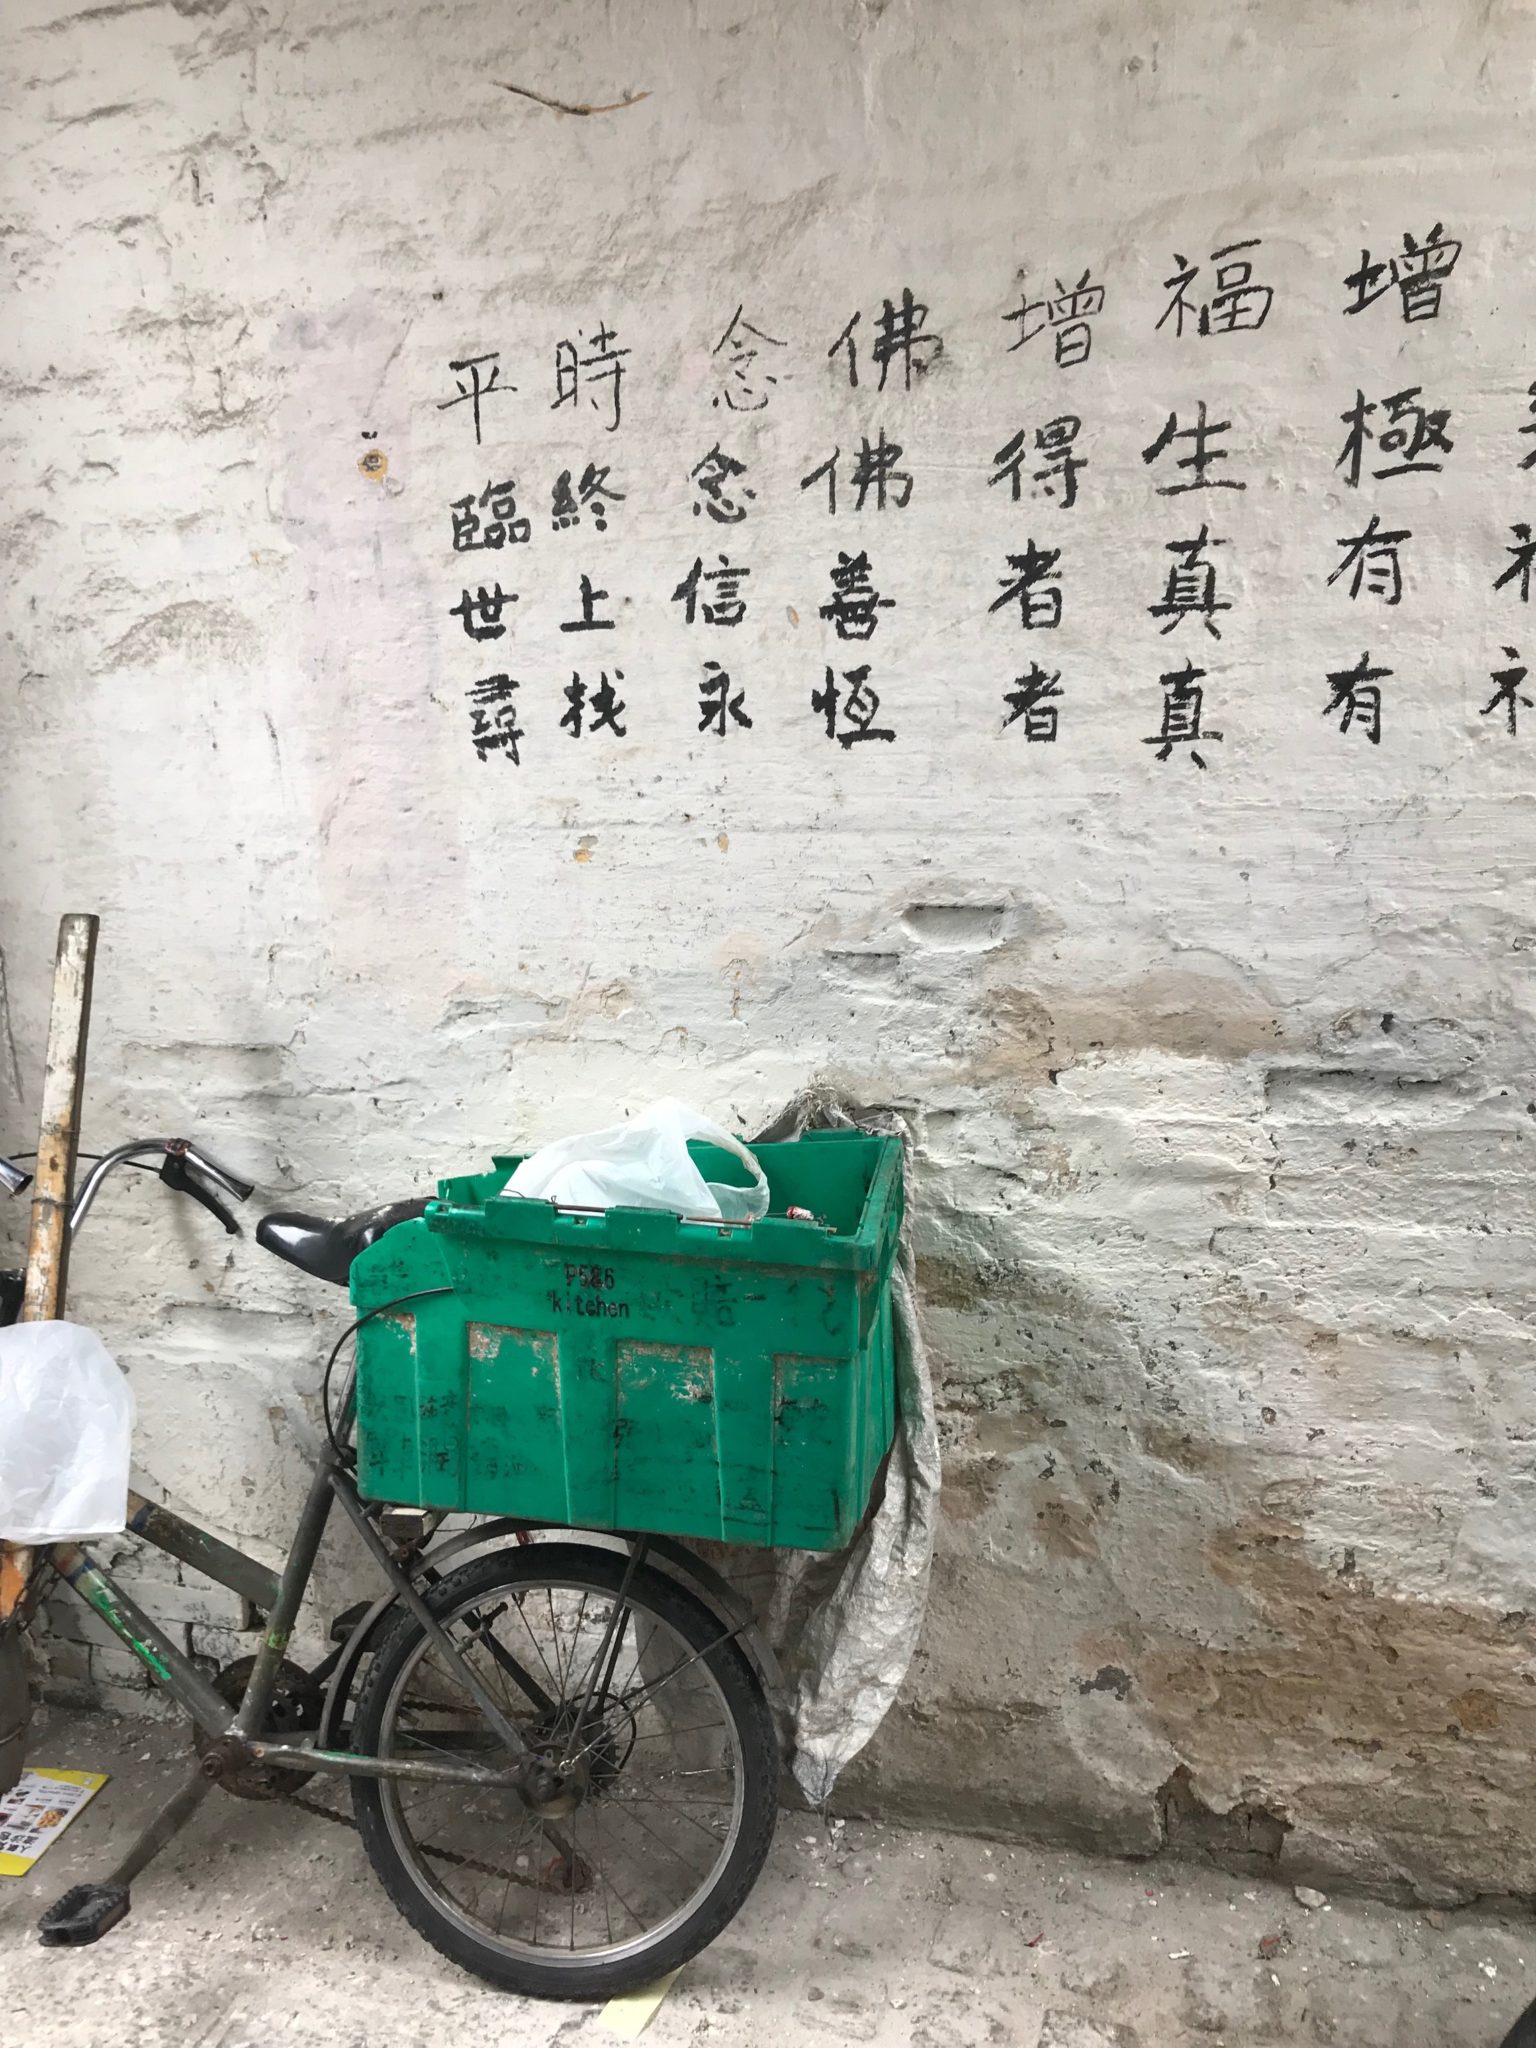 China | Empresa de partilha de bicicletas considera abrir falência